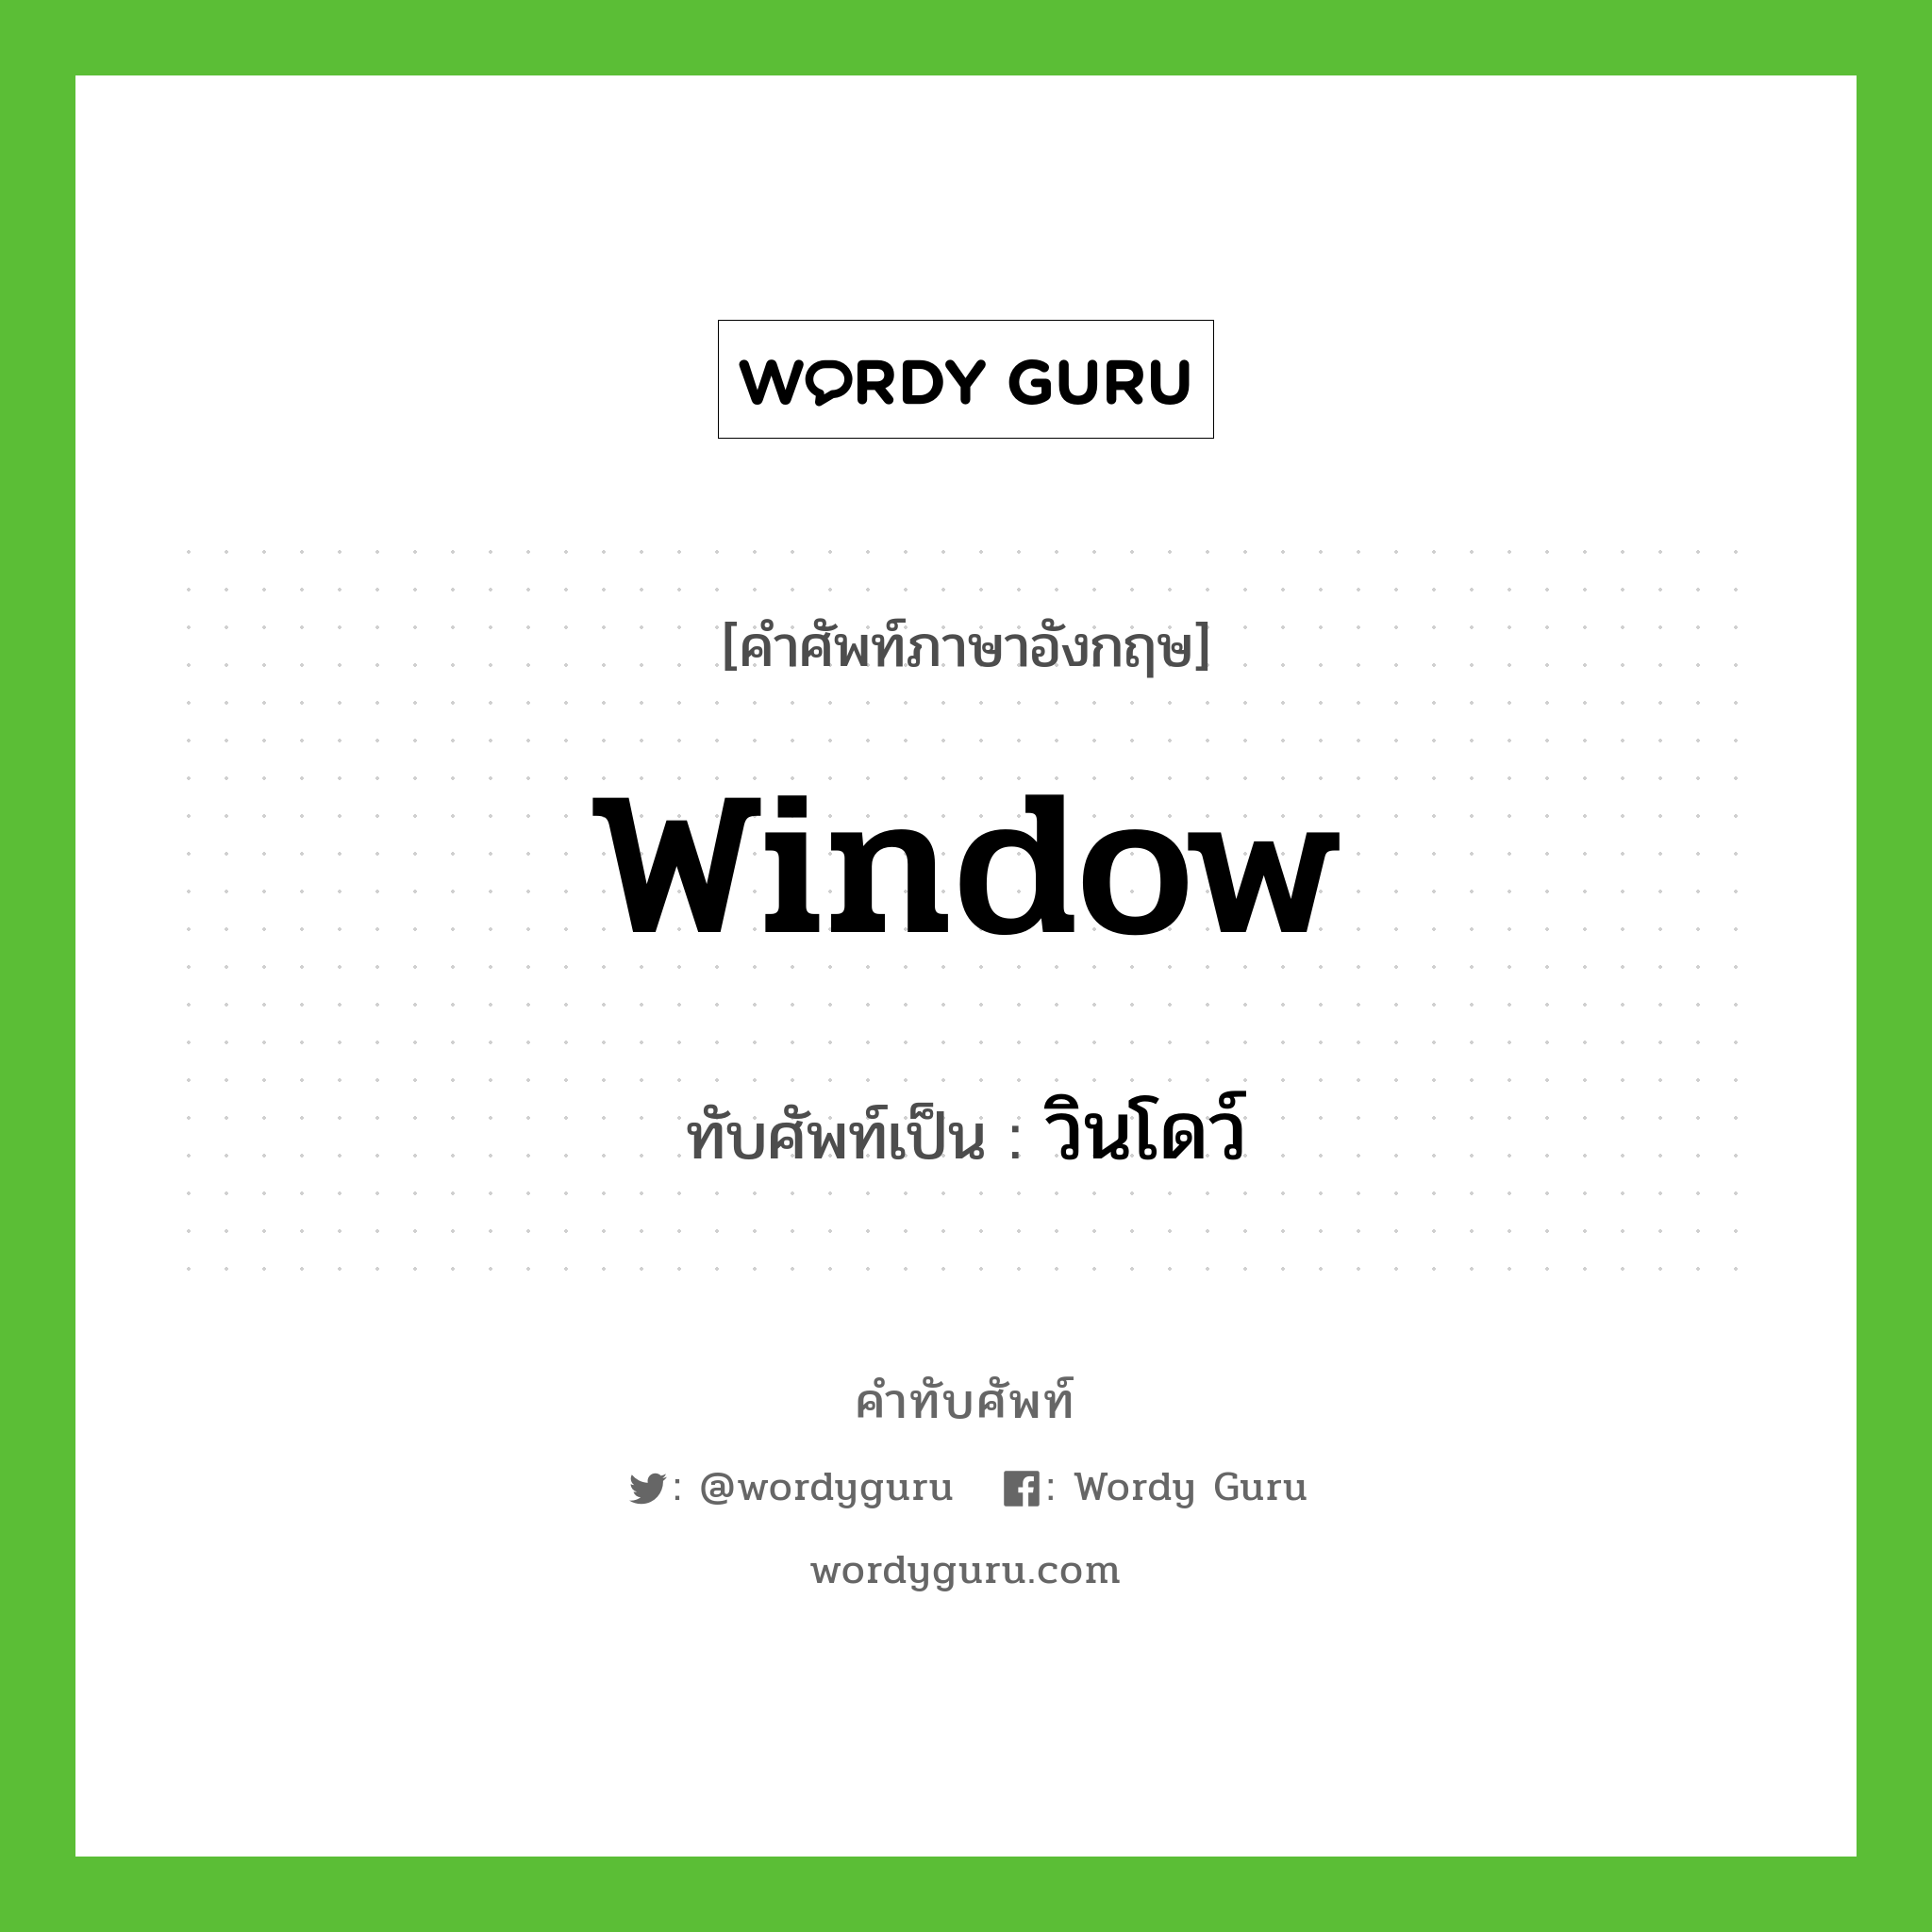 window เขียนเป็นคำไทยว่าอะไร?, คำศัพท์ภาษาอังกฤษ window ทับศัพท์เป็น วินโดว์